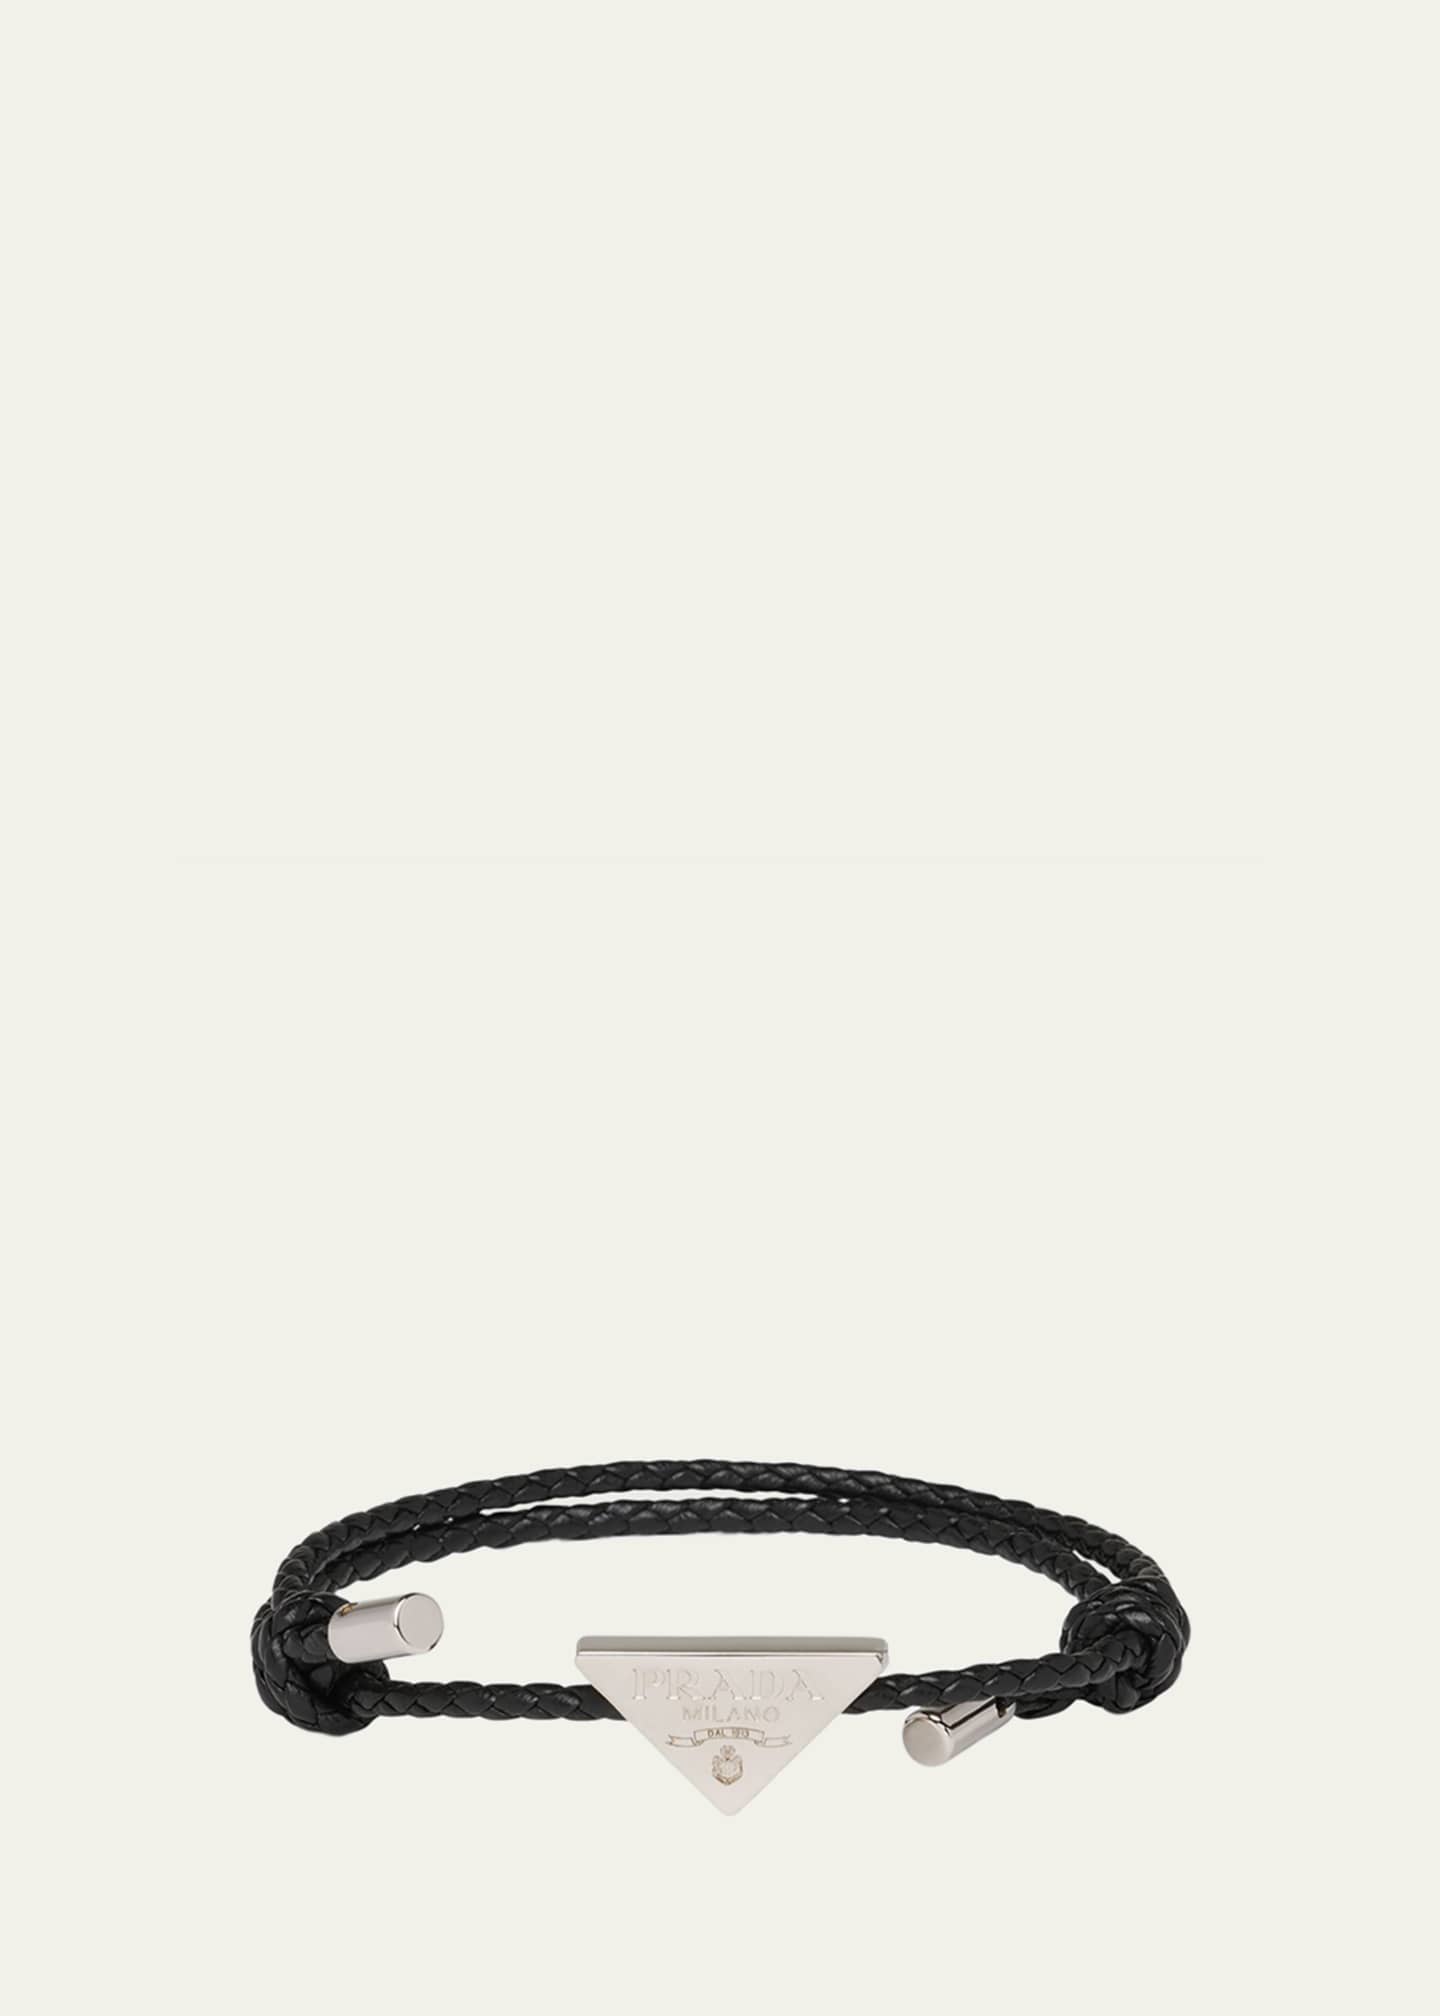 Prada Men's Leather Triangle Logo Sling Crossbody Bag - Bergdorf